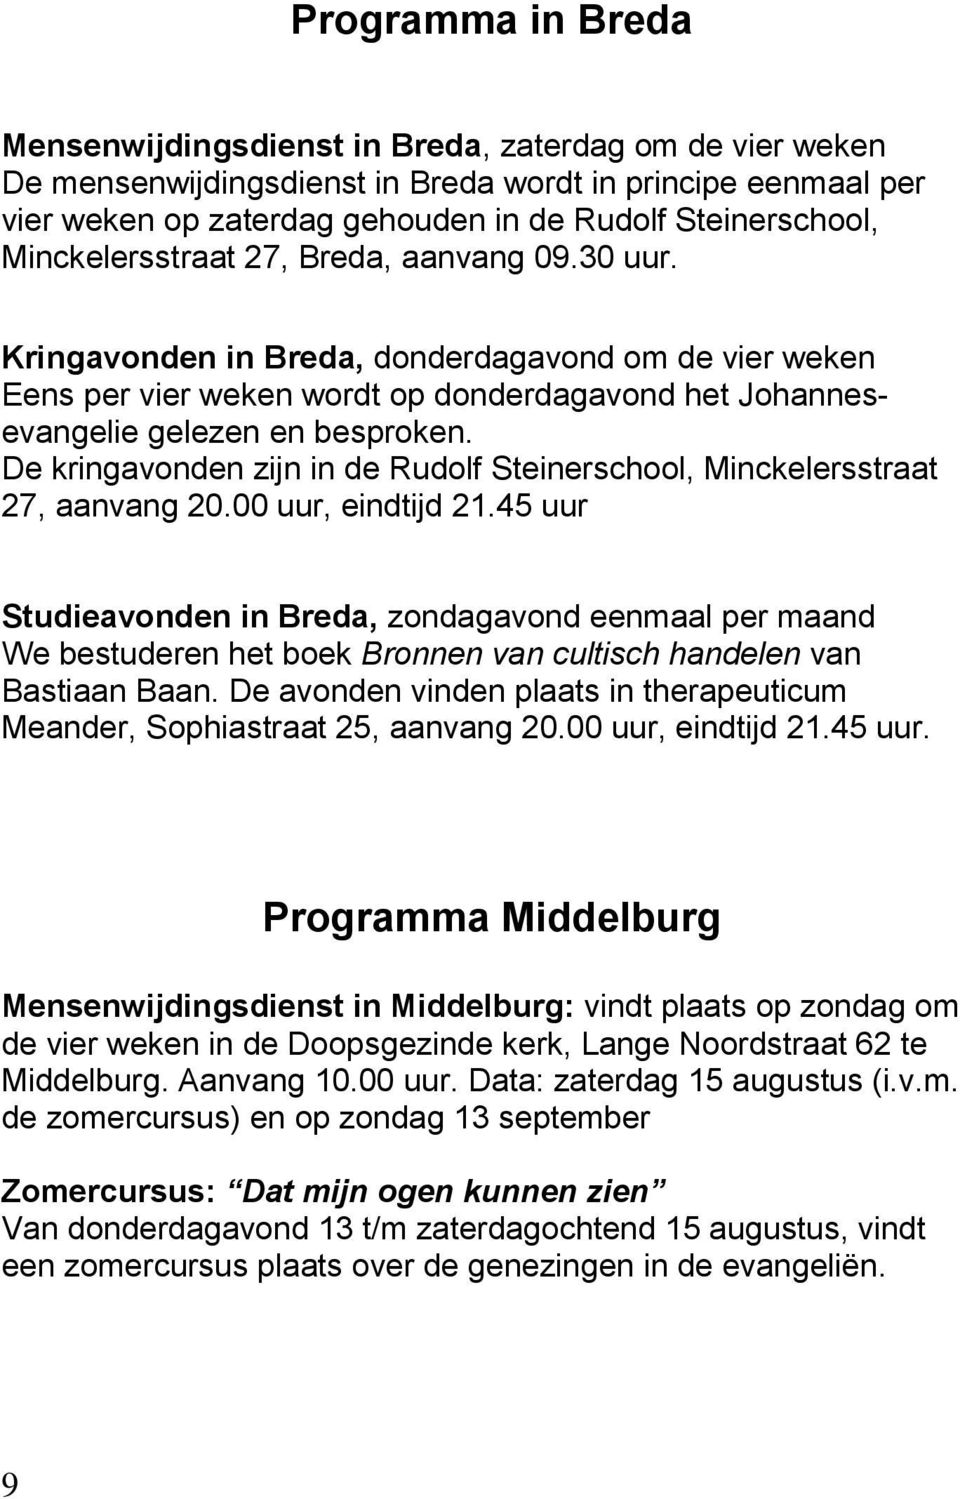 De kringavonden zijn in de Rudolf Steinerschool, Minckelersstraat 27, aanvang 20.00 uur, eindtijd 21.